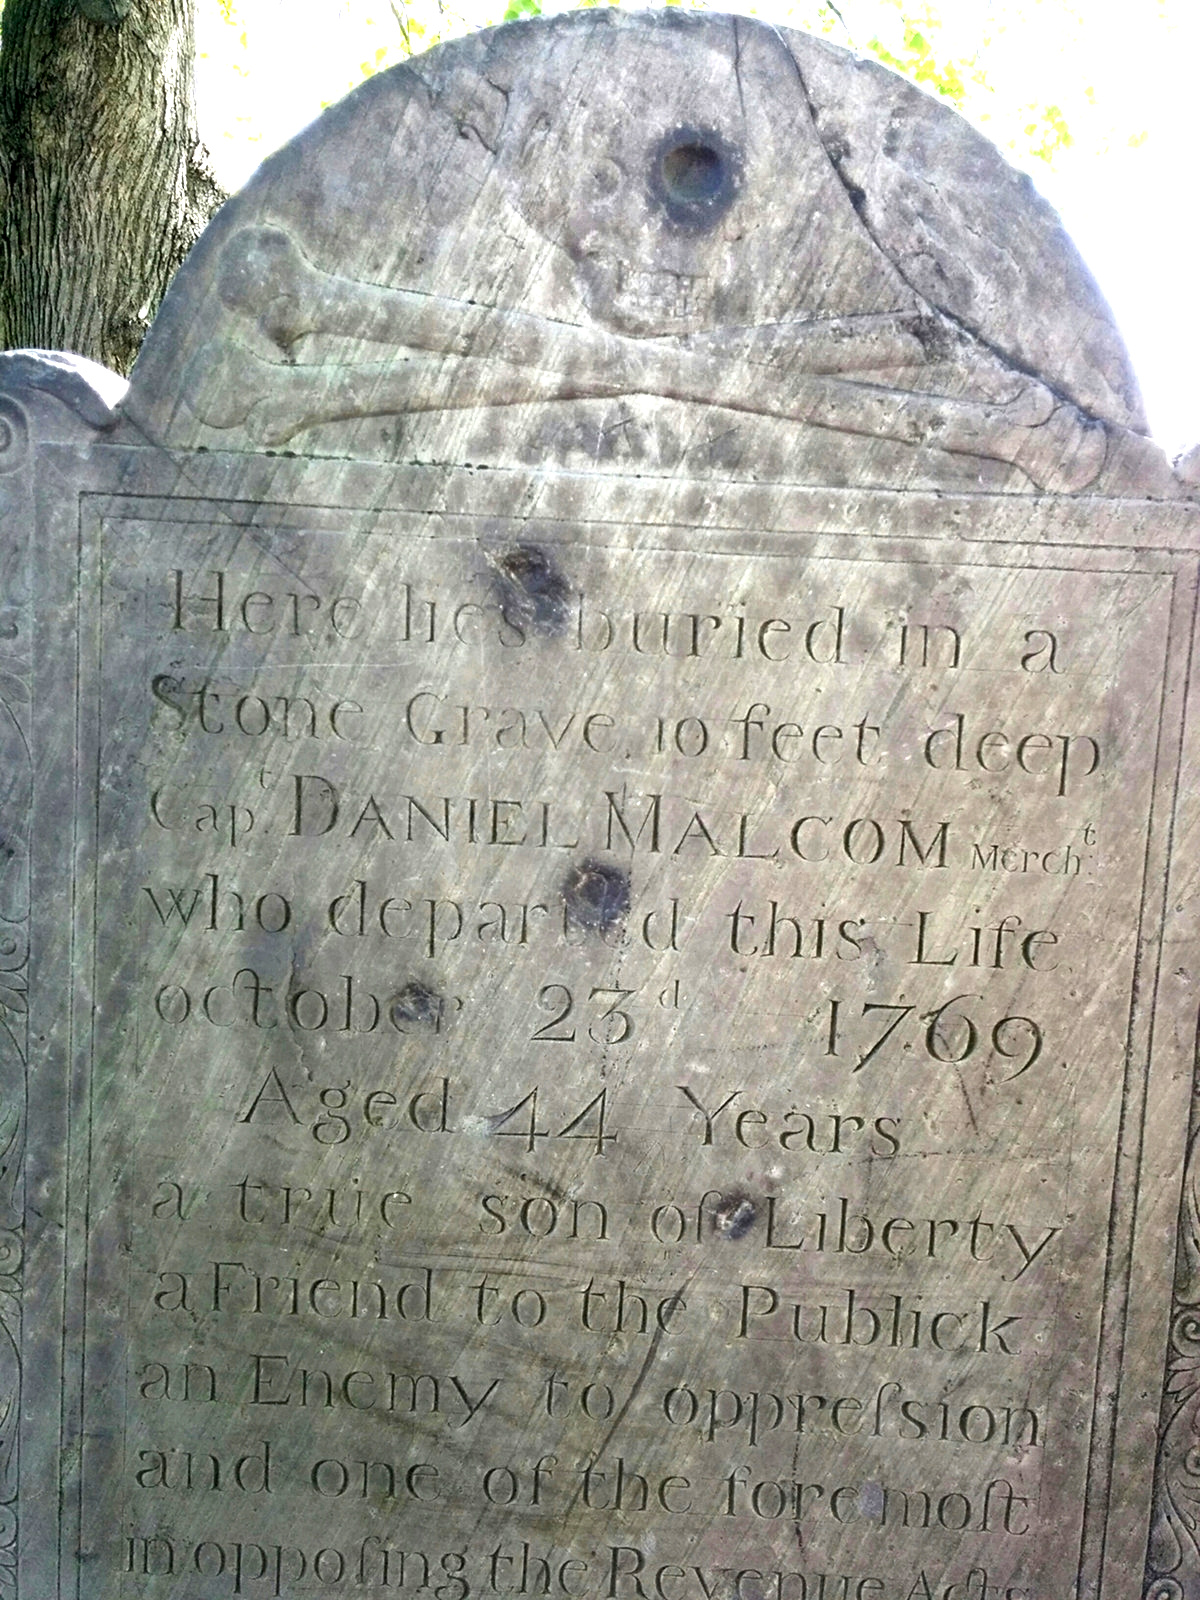 Daniel Martin gravestone, Copp's Hill Burial Ground